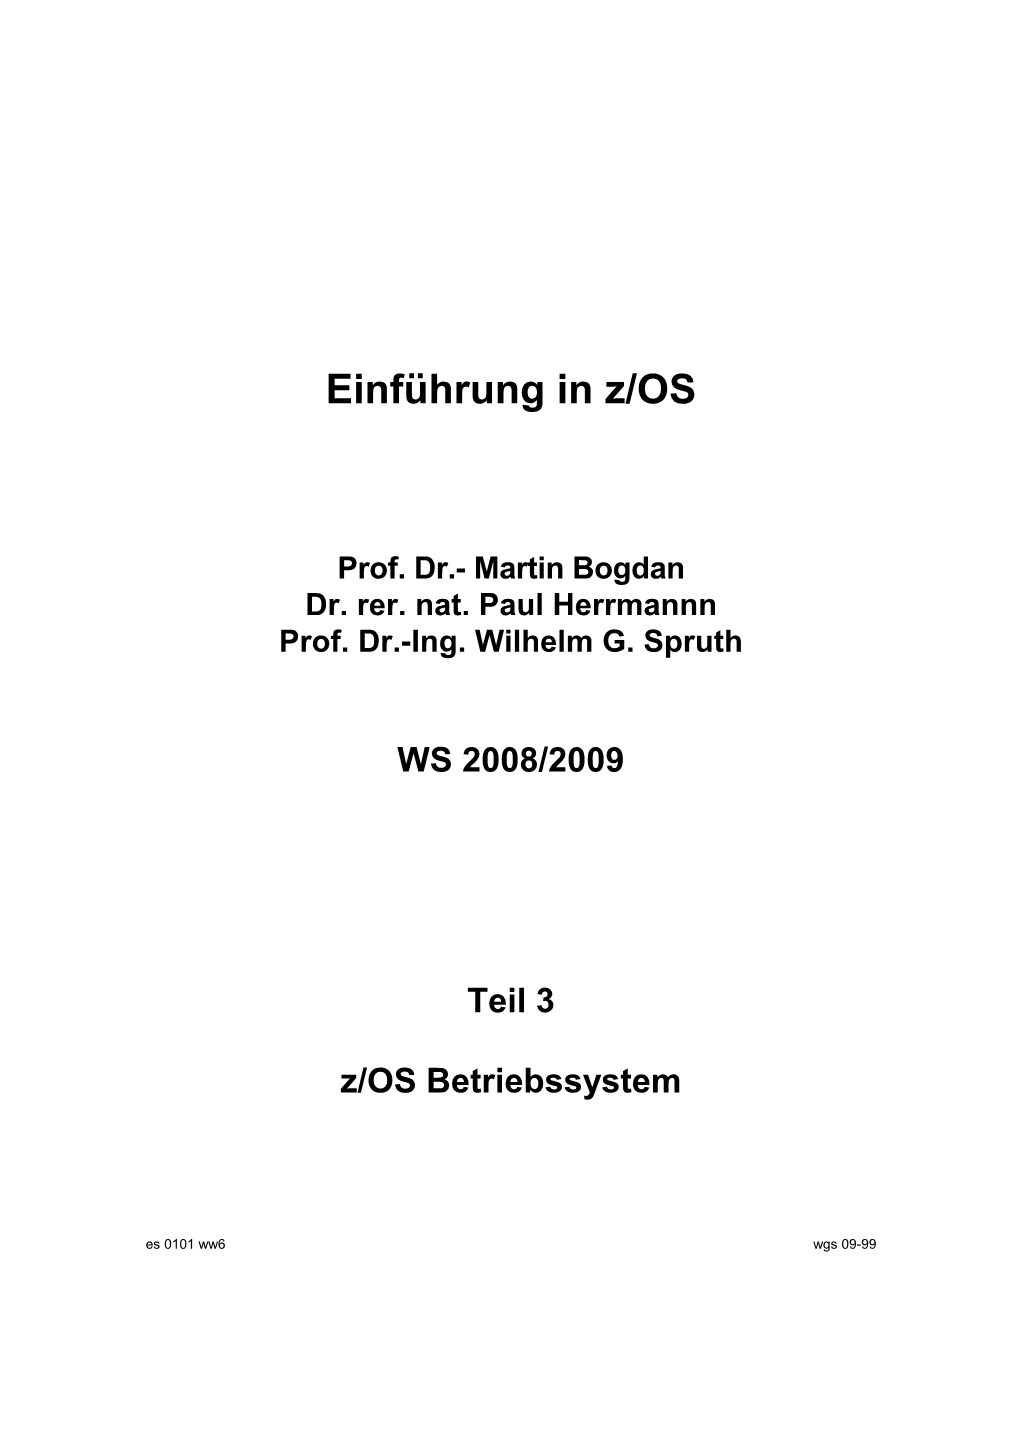 Z/OS Betriebssystem